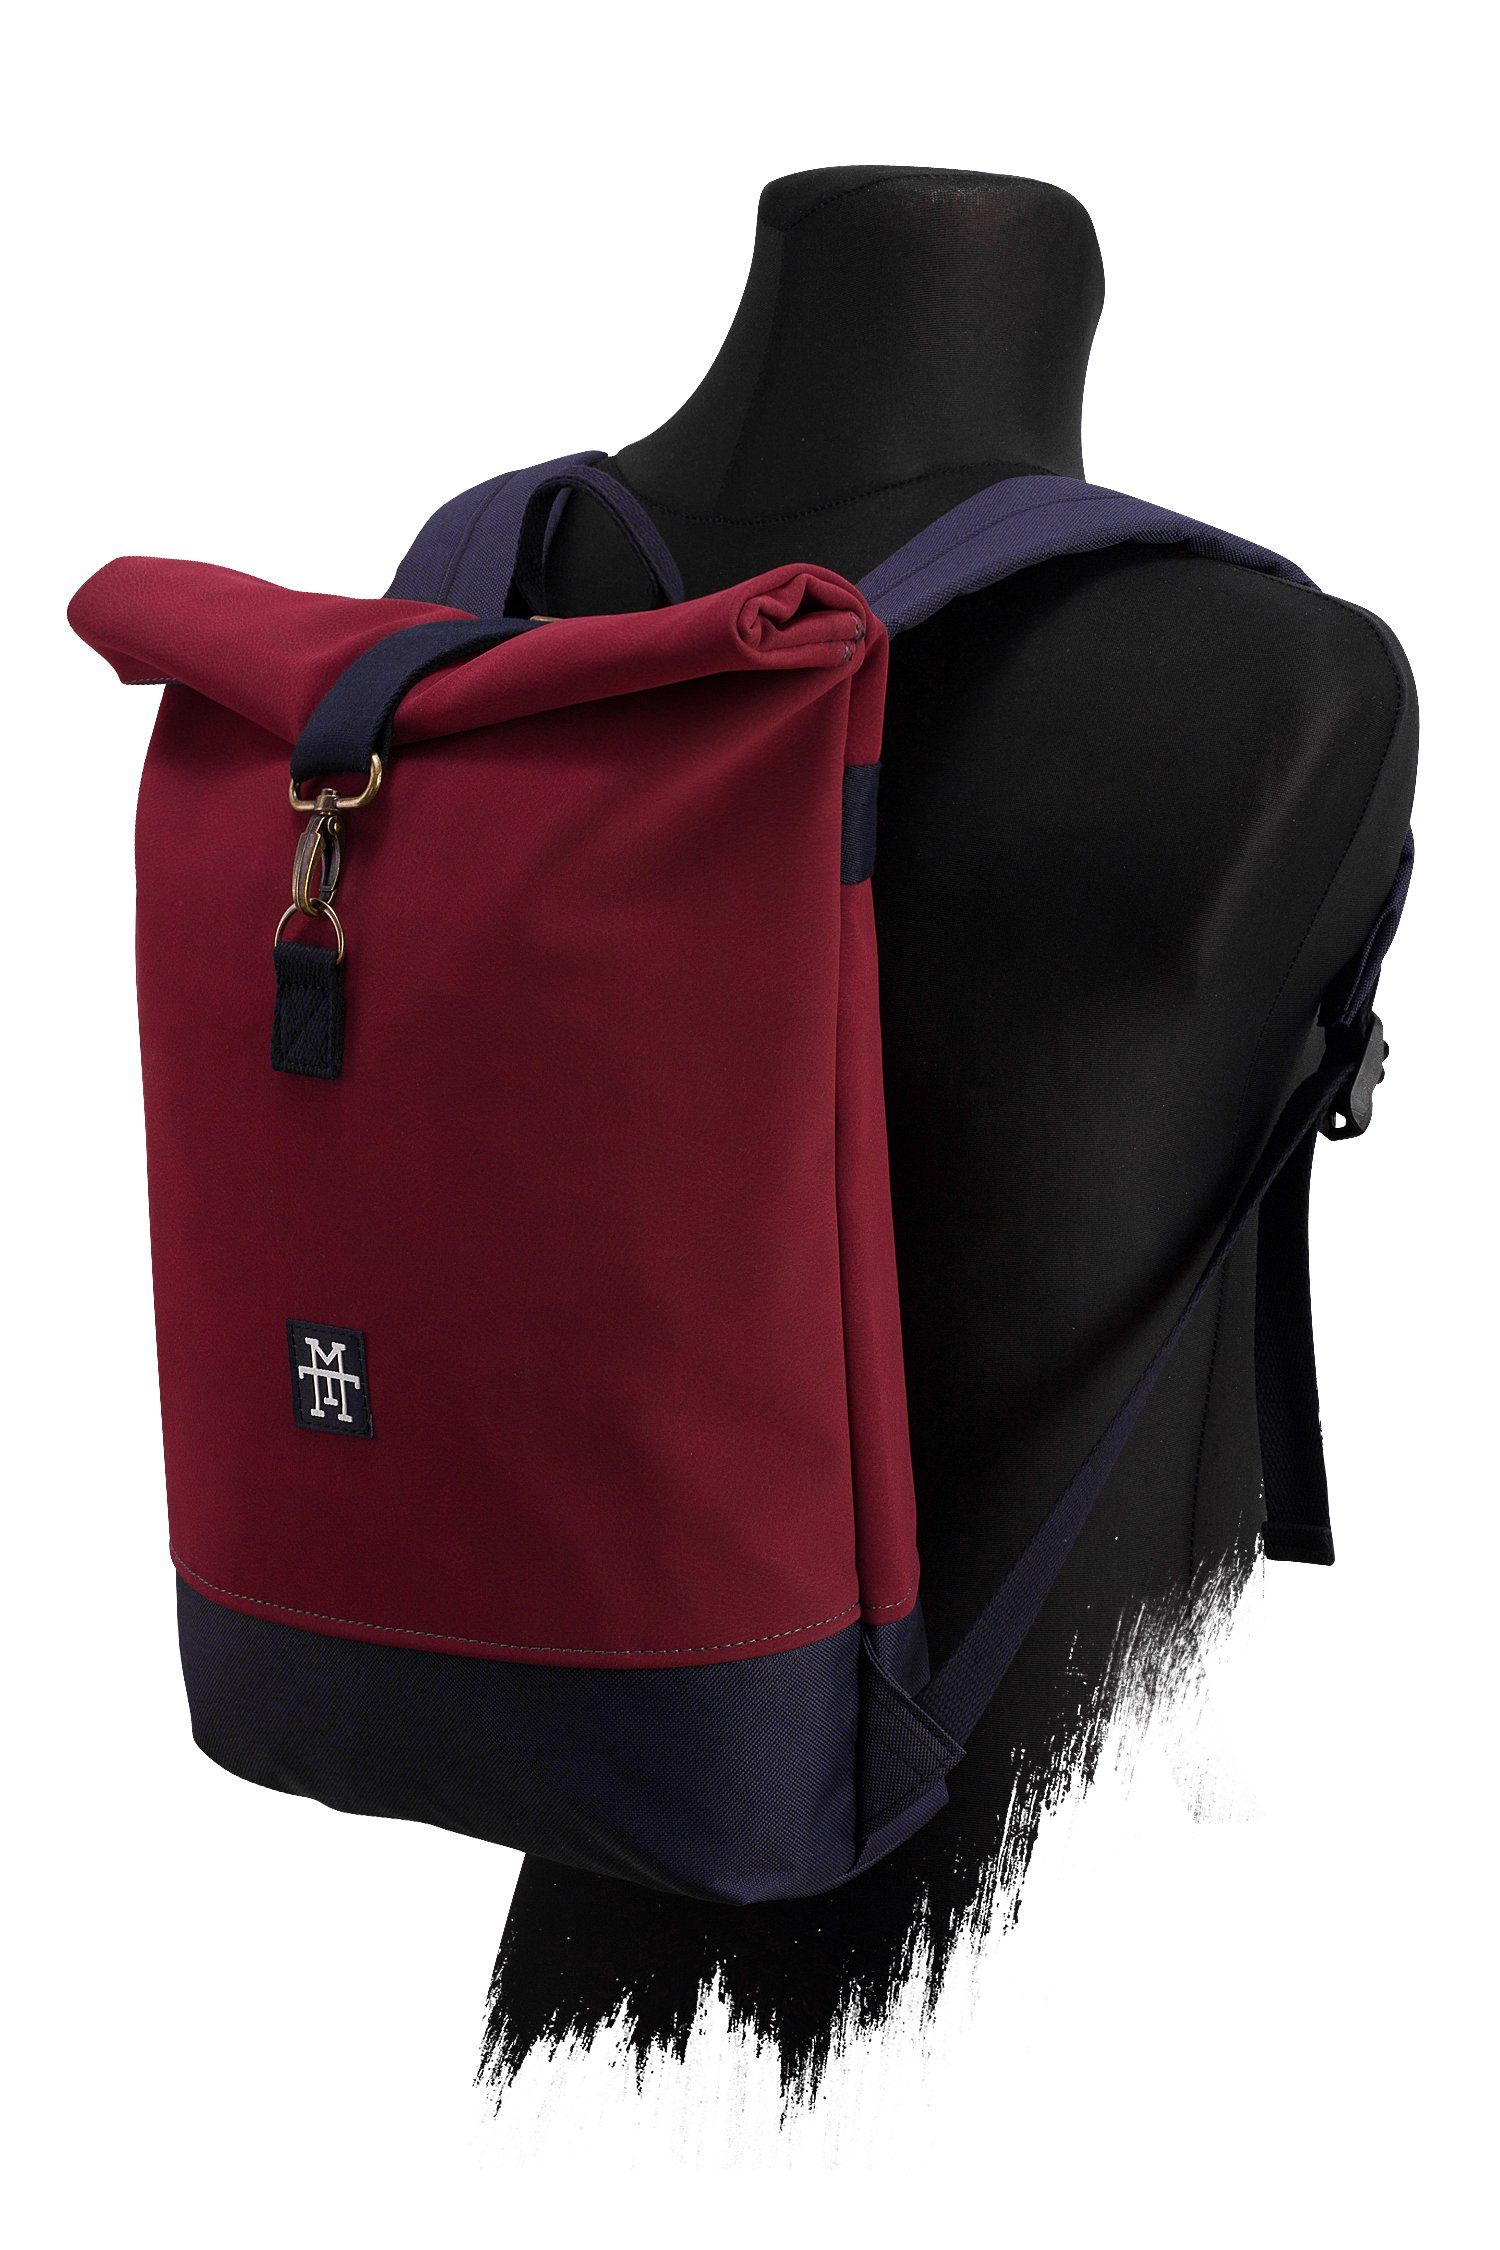 Gurte Manufaktur13 - wasserdicht/wasserabweisend, Bordeaux Mini Rollverschluss, Roll-Top verstellbare Rucksack mit Tagesrucksack Backpack